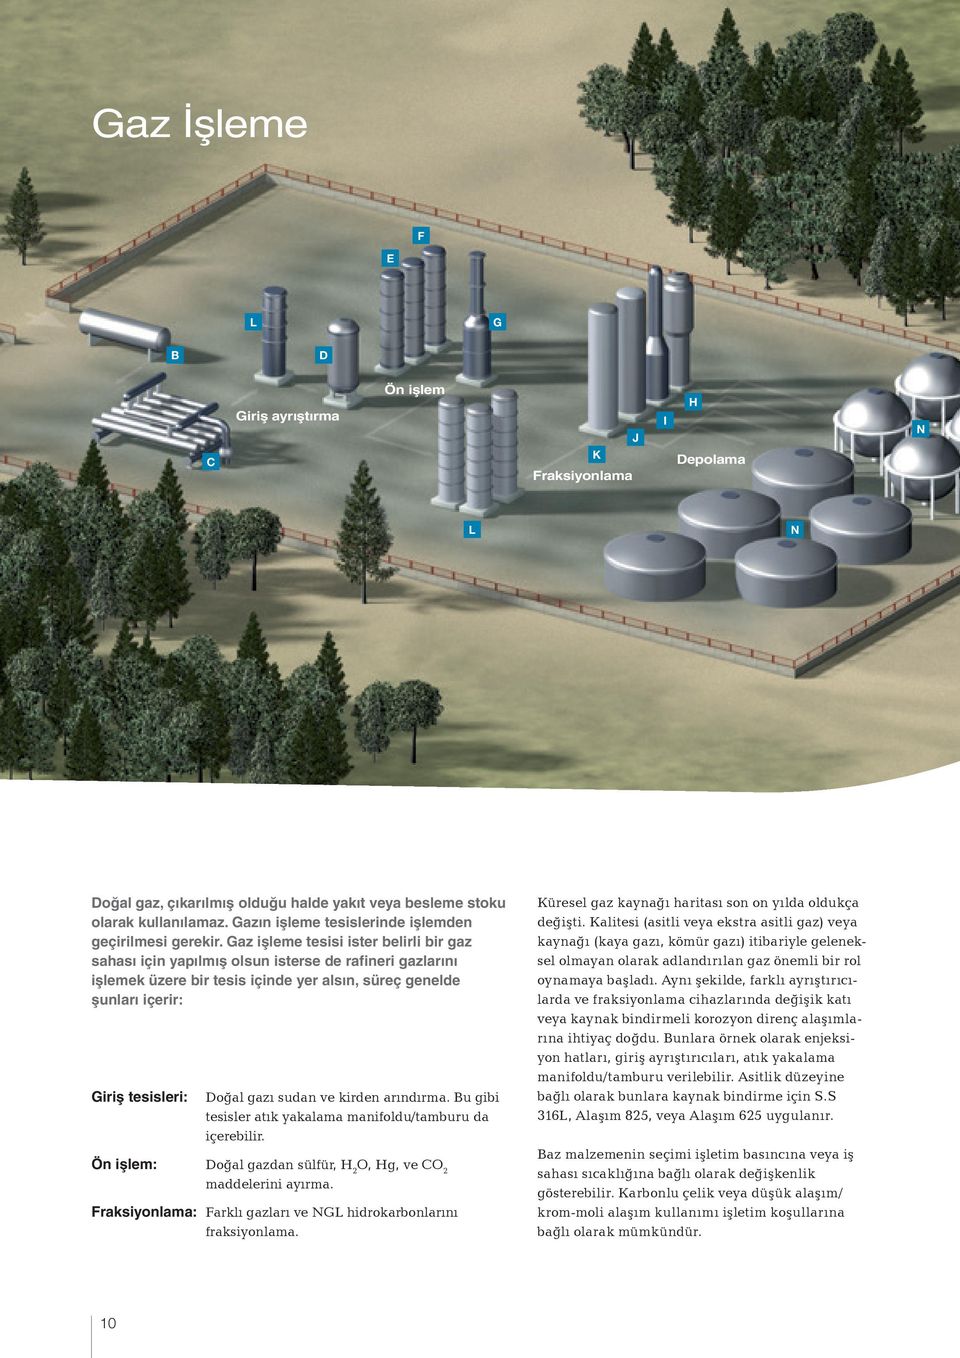 Gaz işleme tesisi ister belirli bir gaz sahası için yapılmış olsun isterse de rafineri gazlarını işlemek üzere bir tesis içinde yer alsın, süreç genelde şunları içerir: Giriş tesisleri: Doğal gazı